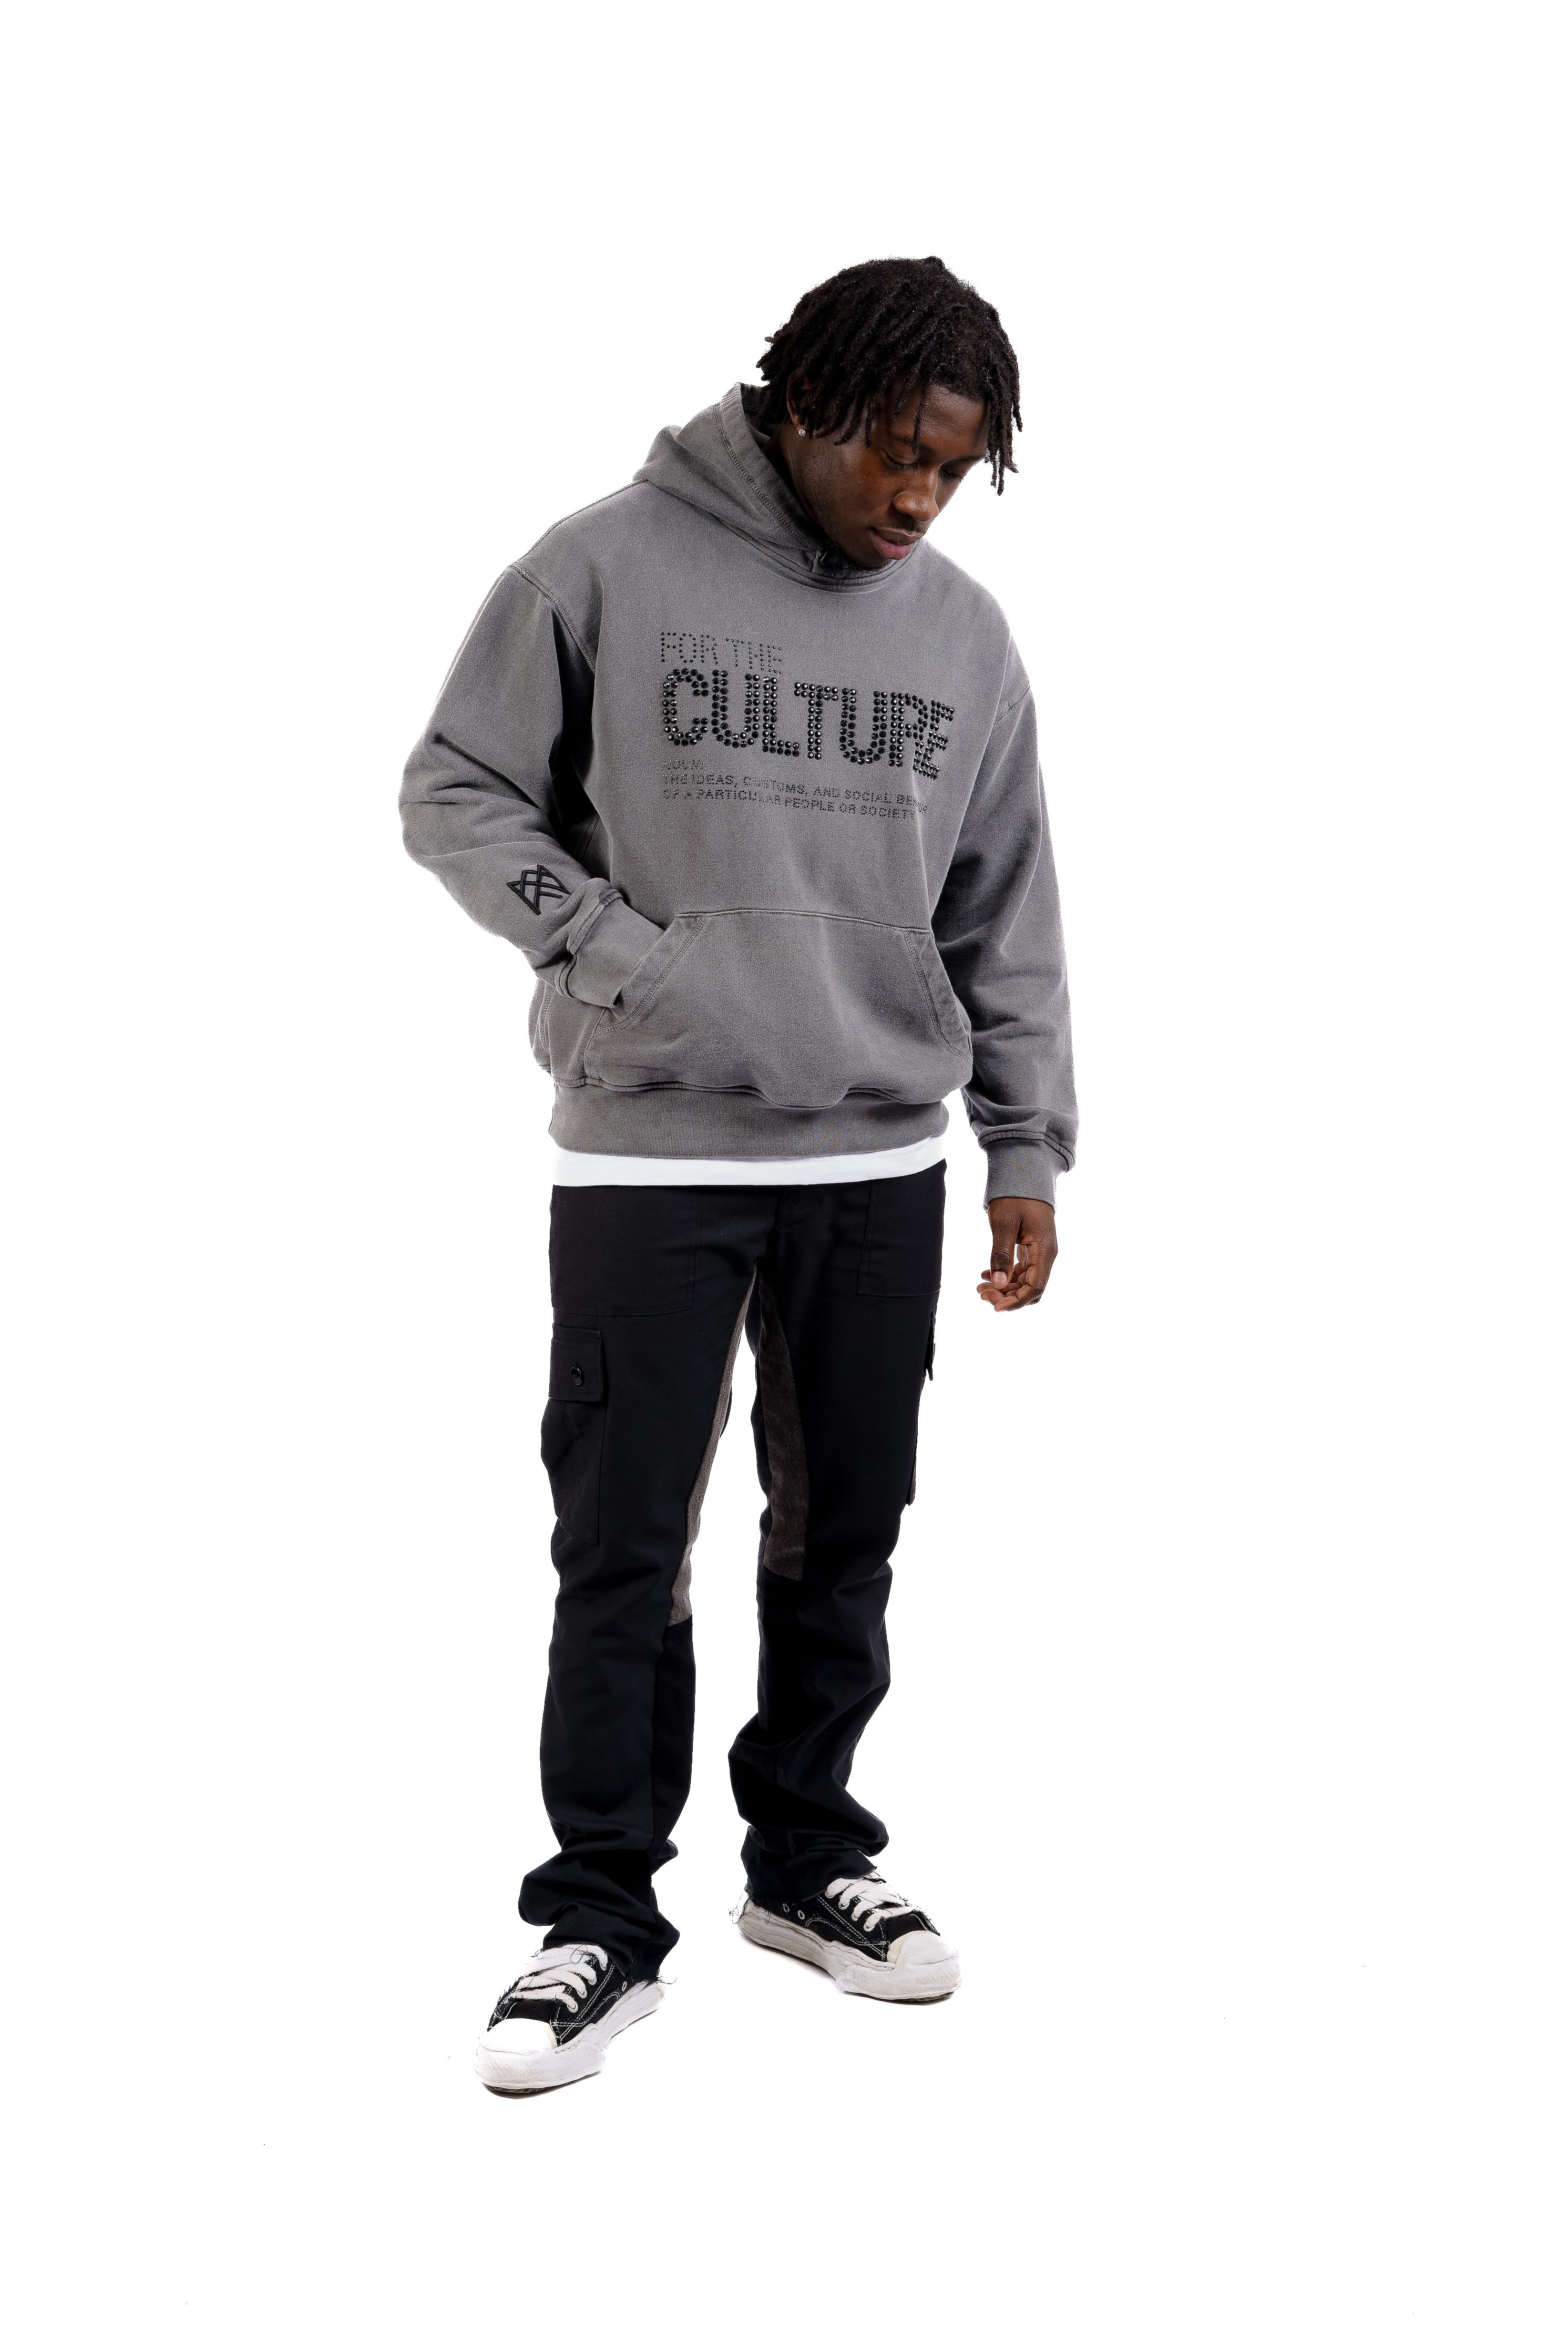 Real Artistic People Streetwear Culture Hoodie - Charcoal Grey